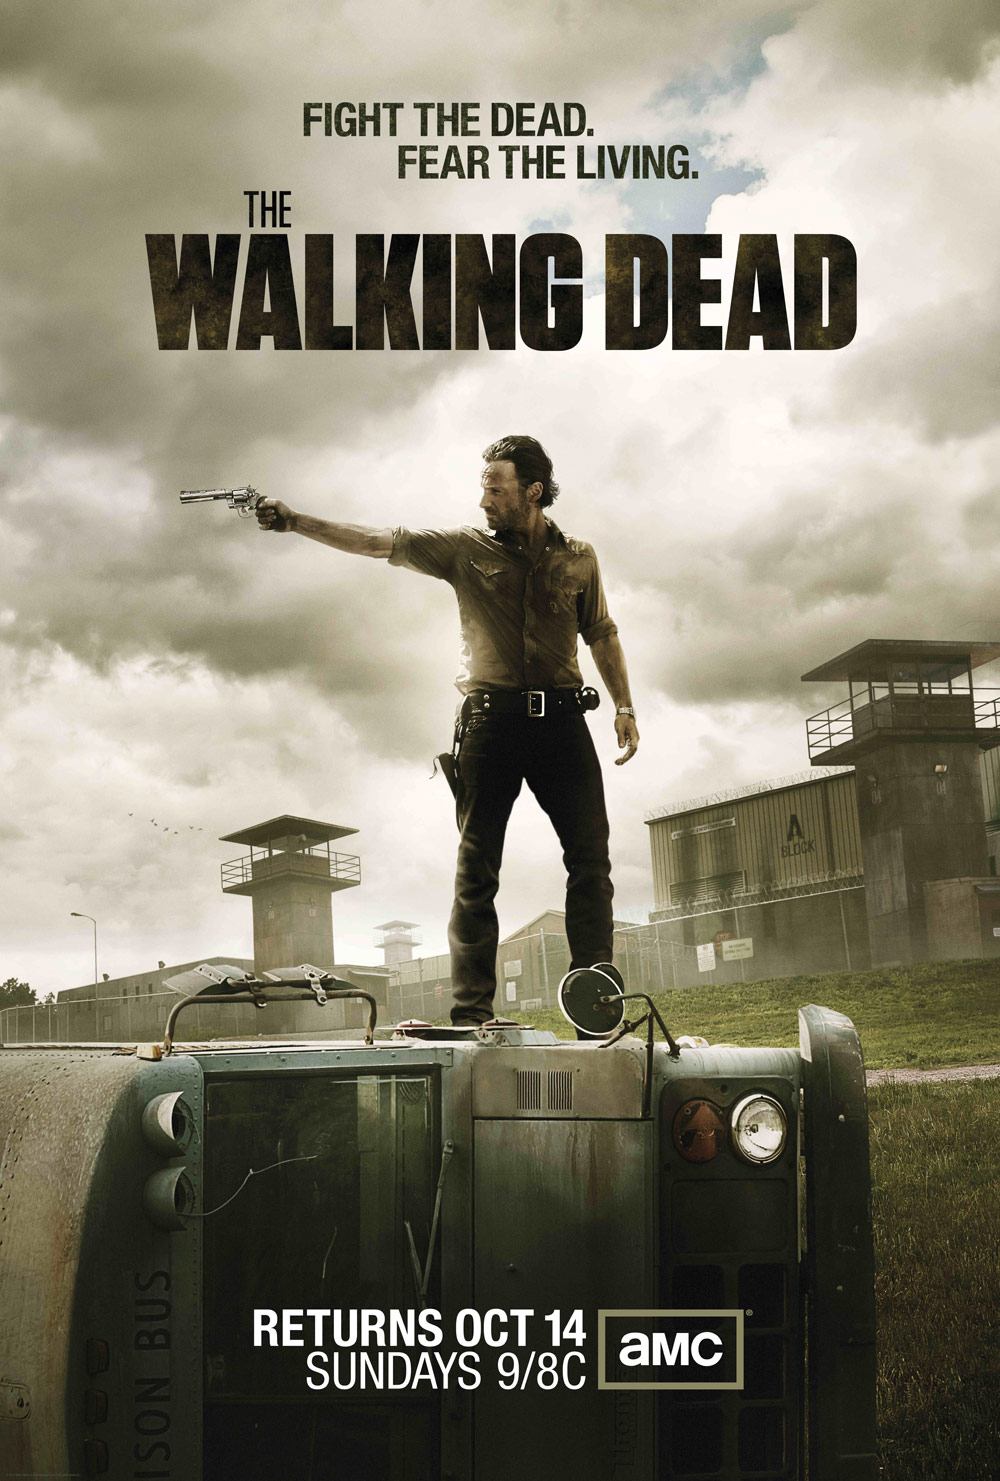 The Walking Dead / Ходячие мертвецы 3 сезон (HD-720p) все серии подряд перевод Кубик в кубе и FoxCrime (2012)